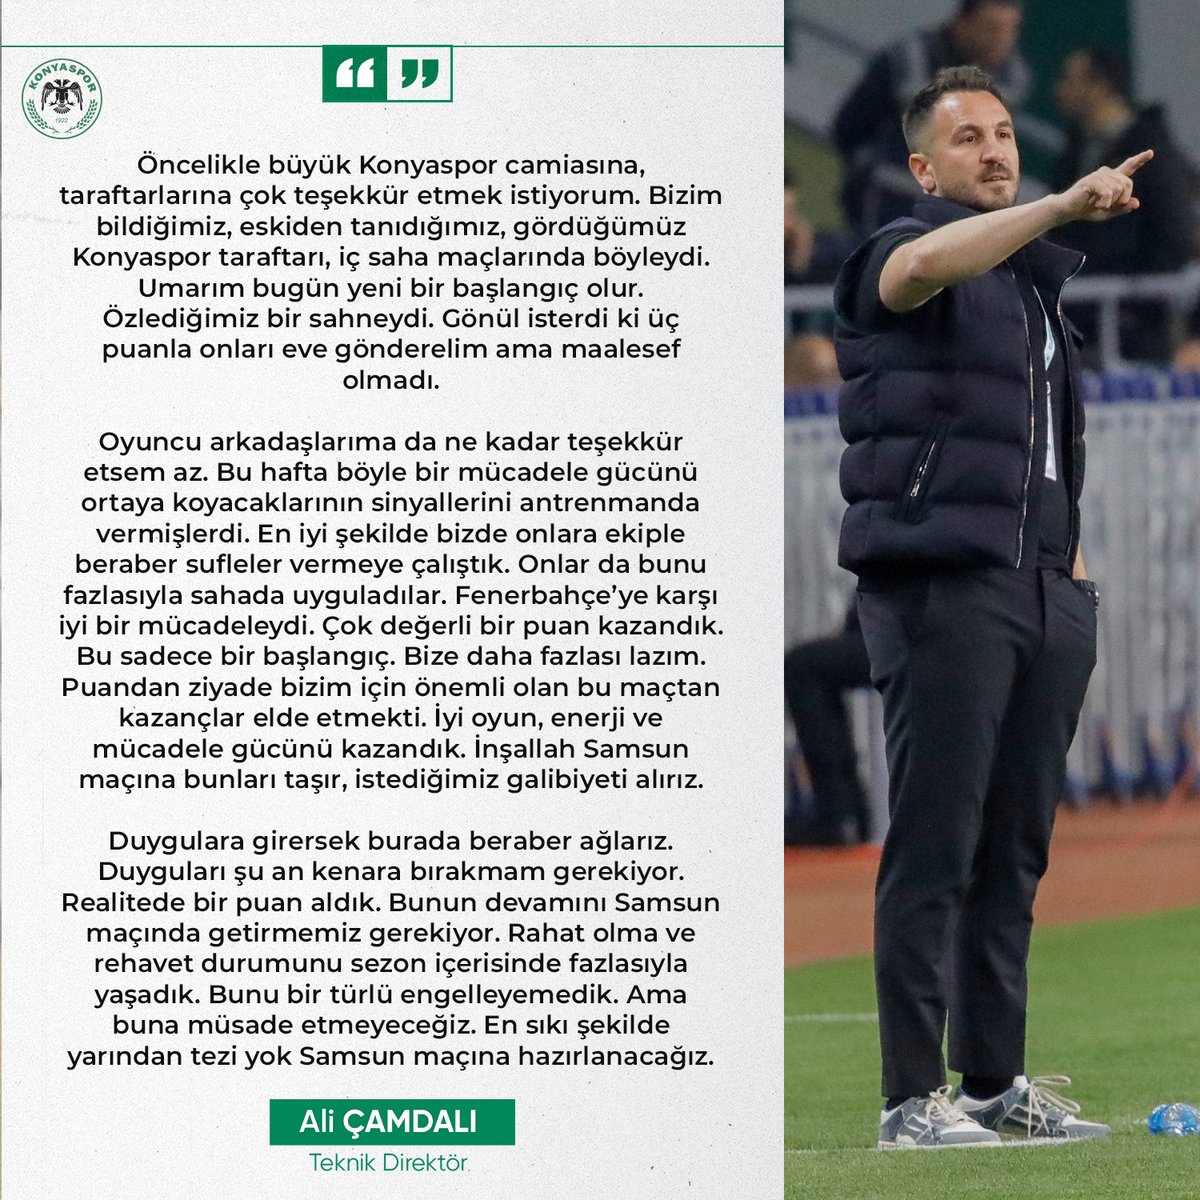 'Puandan ziyade bizim için önemli olan bu maçtan kazançlar elde etmekti. İyi oyun, enerji ve mücadele gücünü kazandık.' 🎙️ Teknik Direktörümüz Ali Çamdalı, Fenerbahçe maçı sonrası açıklamalarda bulundu.